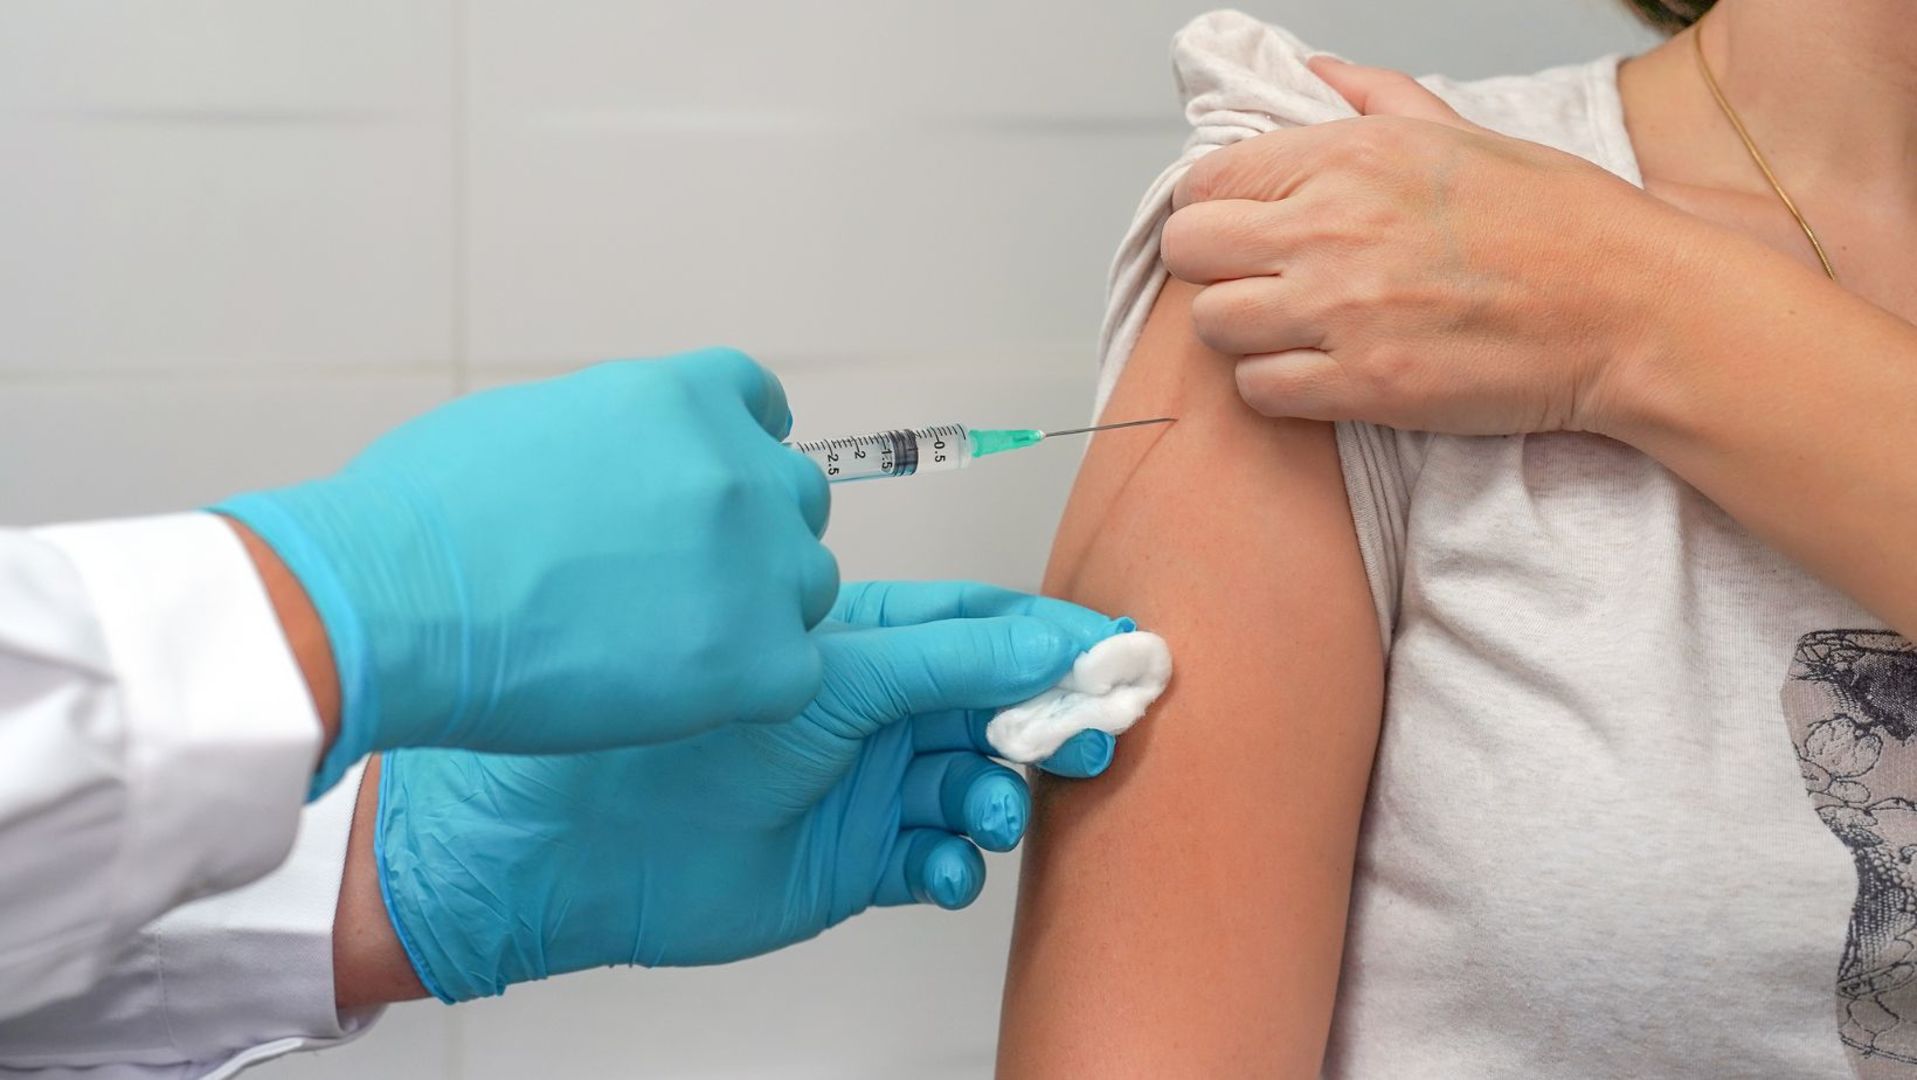 Na zdjęciu ramię osoby dorosłej odsłonięte do szczepienia oraz dłoń lekarza ze strzykawką.